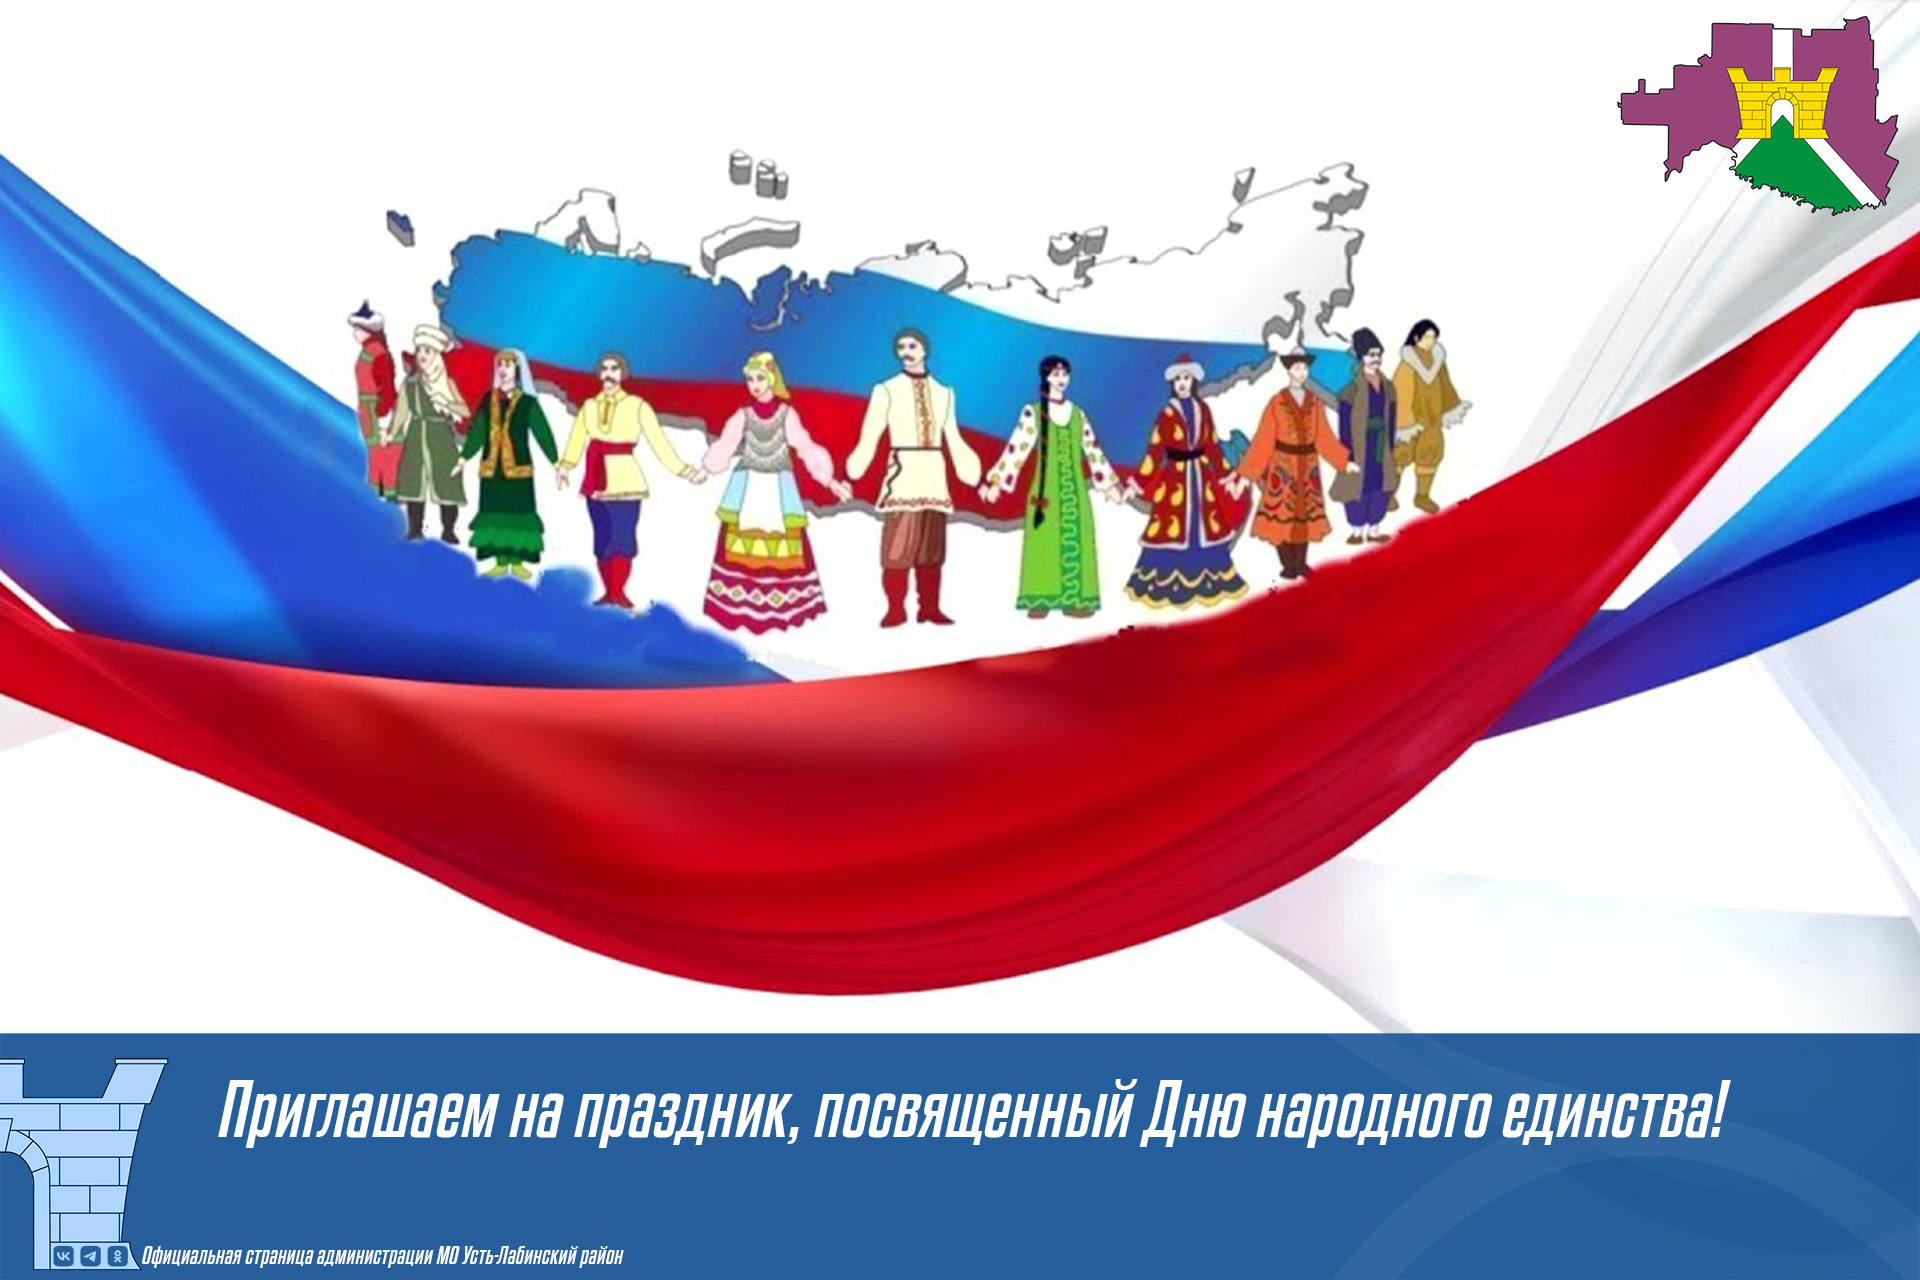  Приглашаем жителей и гостей города Усть-Лабинска на праздник, посвященный Дню народного единства